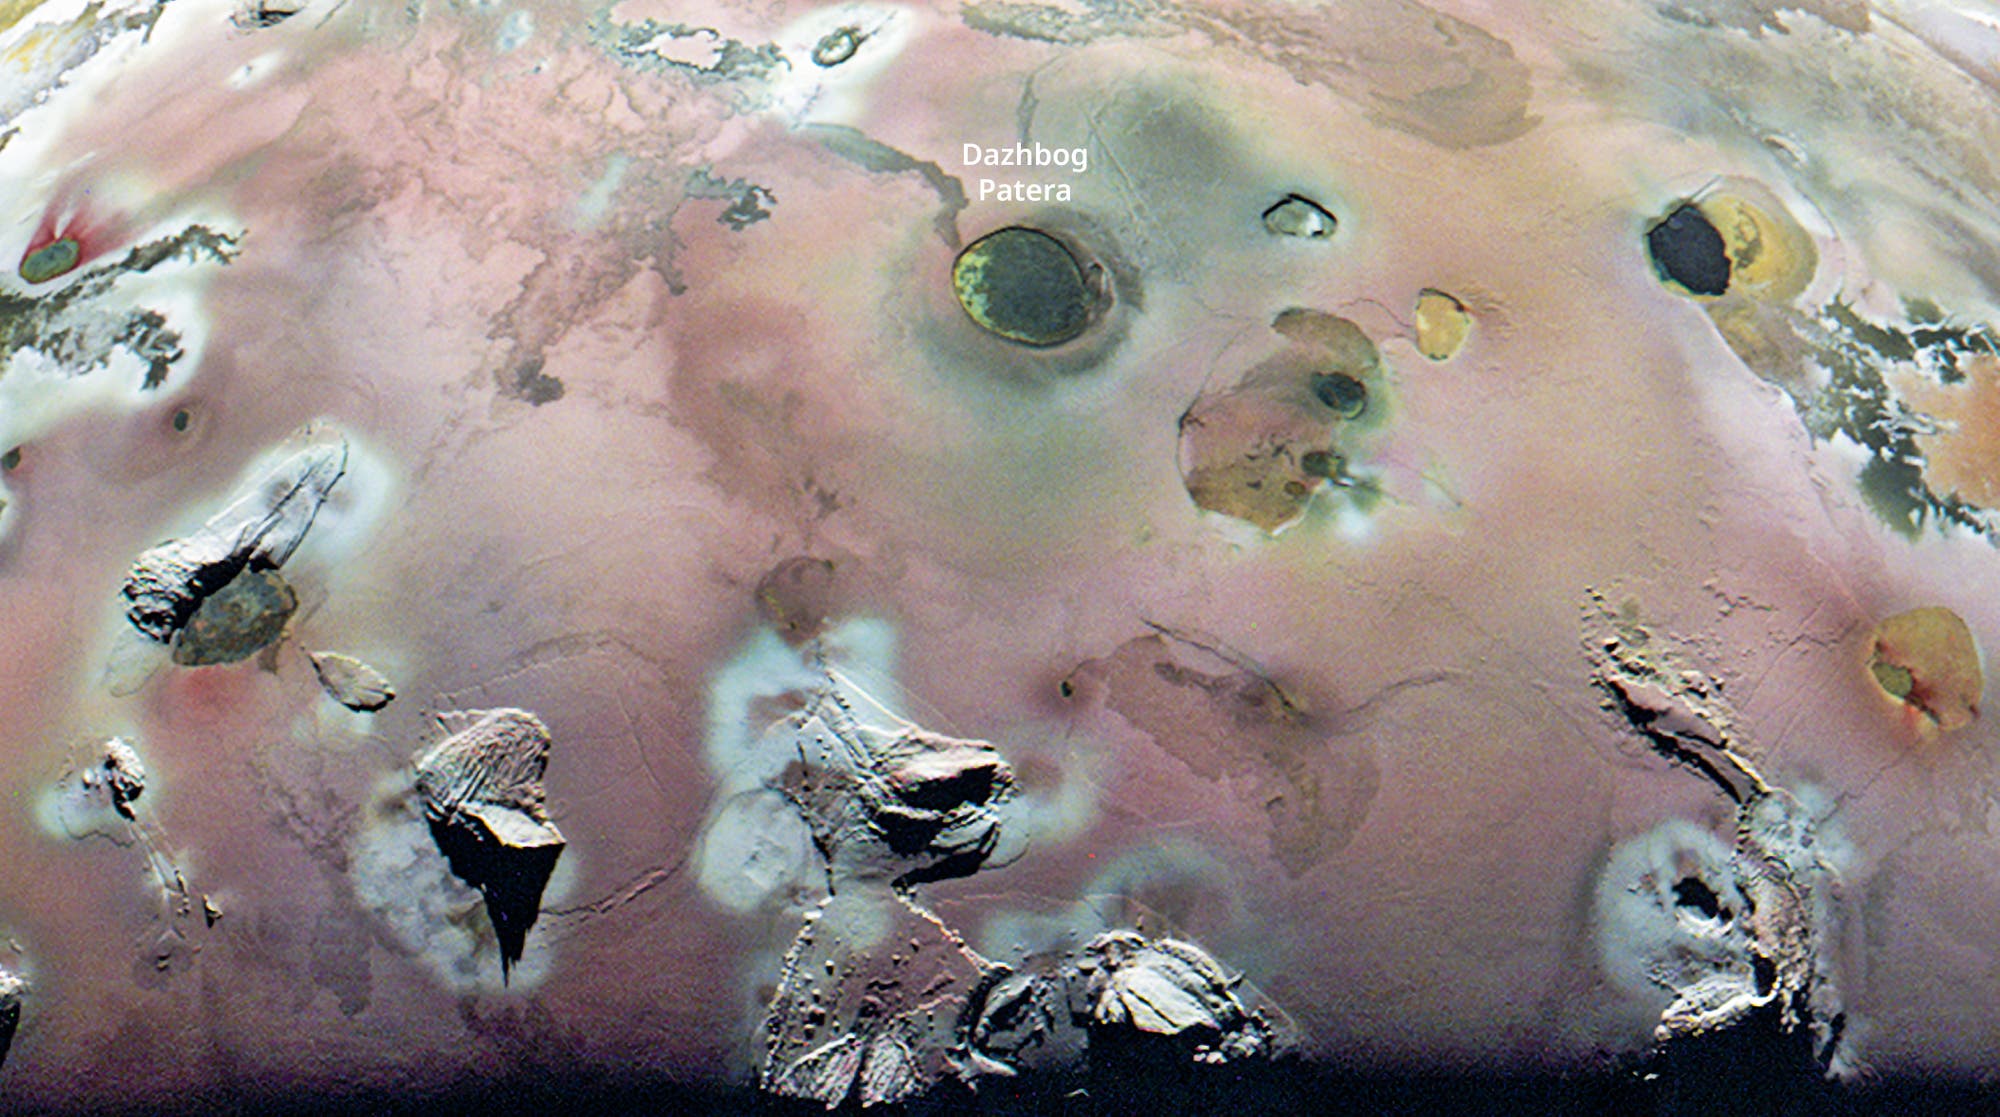 Teilansicht von Io mit der vulkanischen Einbruchstruktur Dazhbog Patera und Bergmassiven